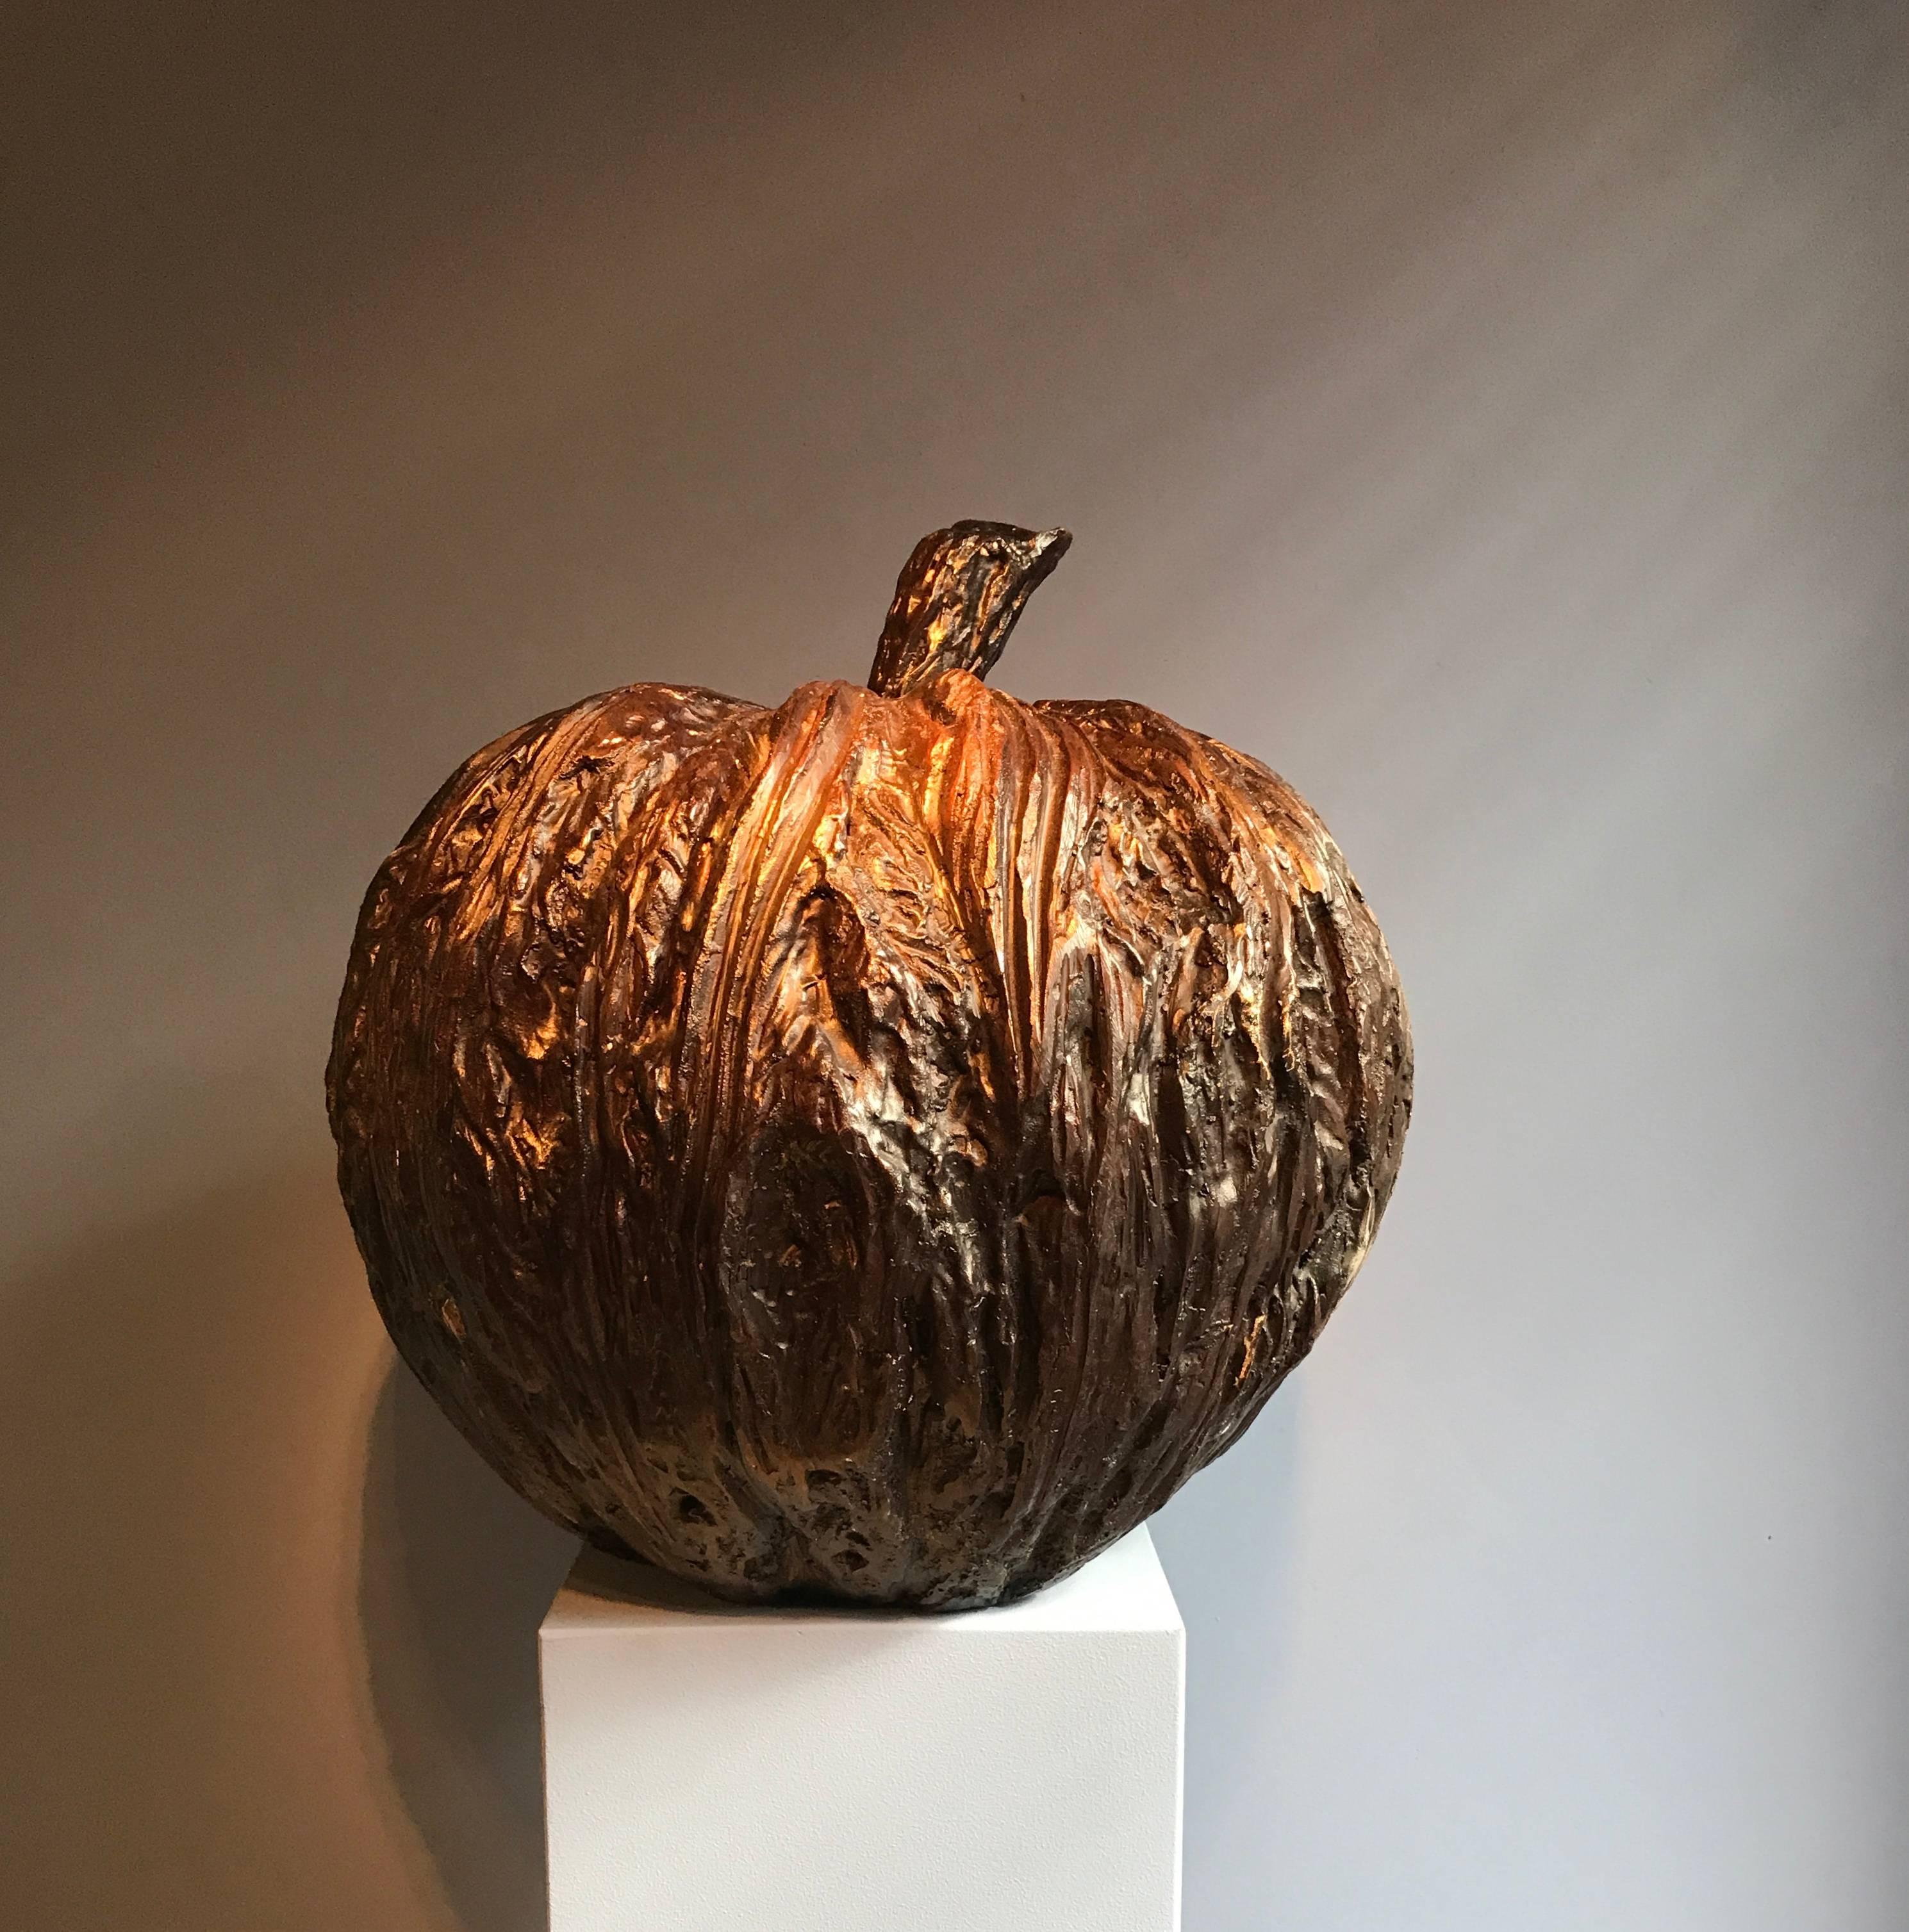 Bronze contemporary artwork by Asian artist, Chanin Pan
Bronze apple.